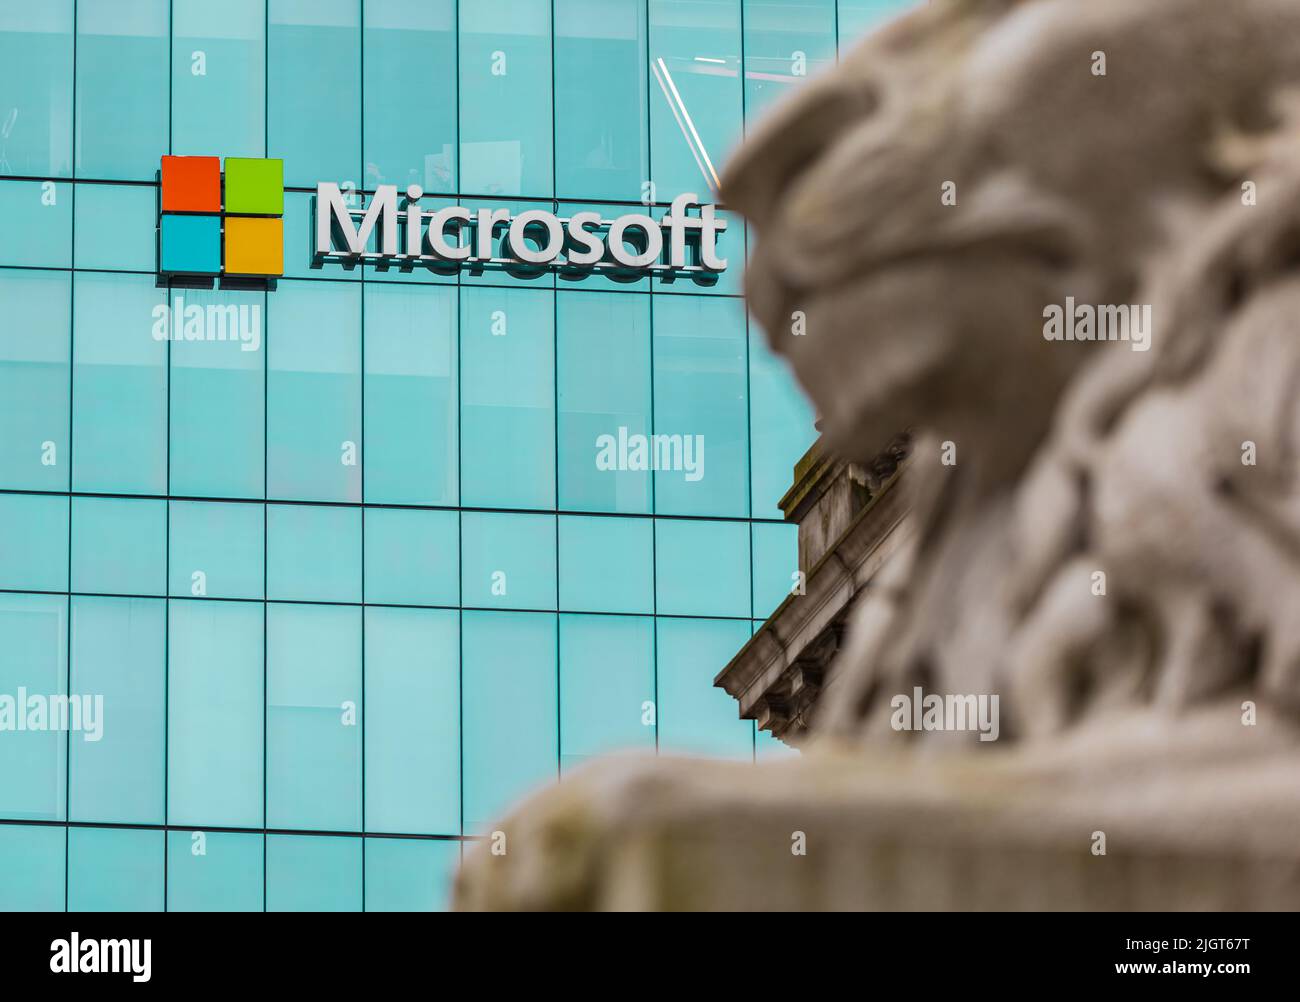 Microsoft Corp.-Logo auf der Seite des Einkaufszentrums in der Innenstadt. Das Microsoft-Logo ist an der Fassade des CF Pacific Center in der Innenstadt von Vancouver, Kanada, zu sehen. Niemand, Stockfoto